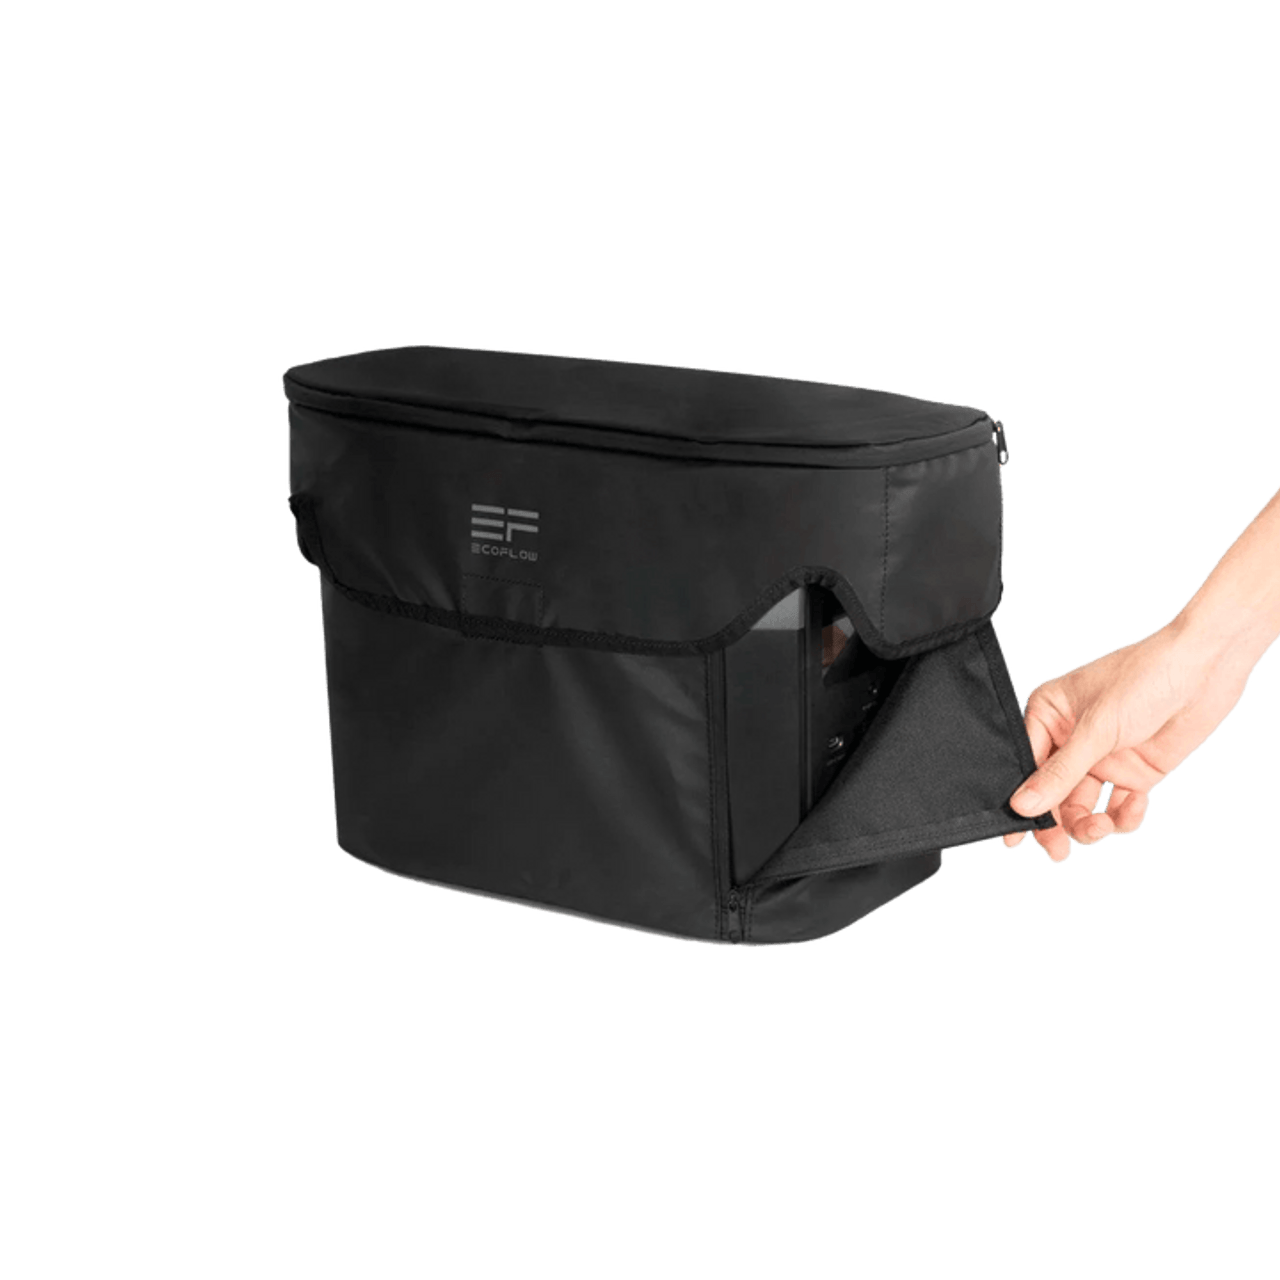 EcoFlow DELTA 2 Waterproof Bag - EcoFlow